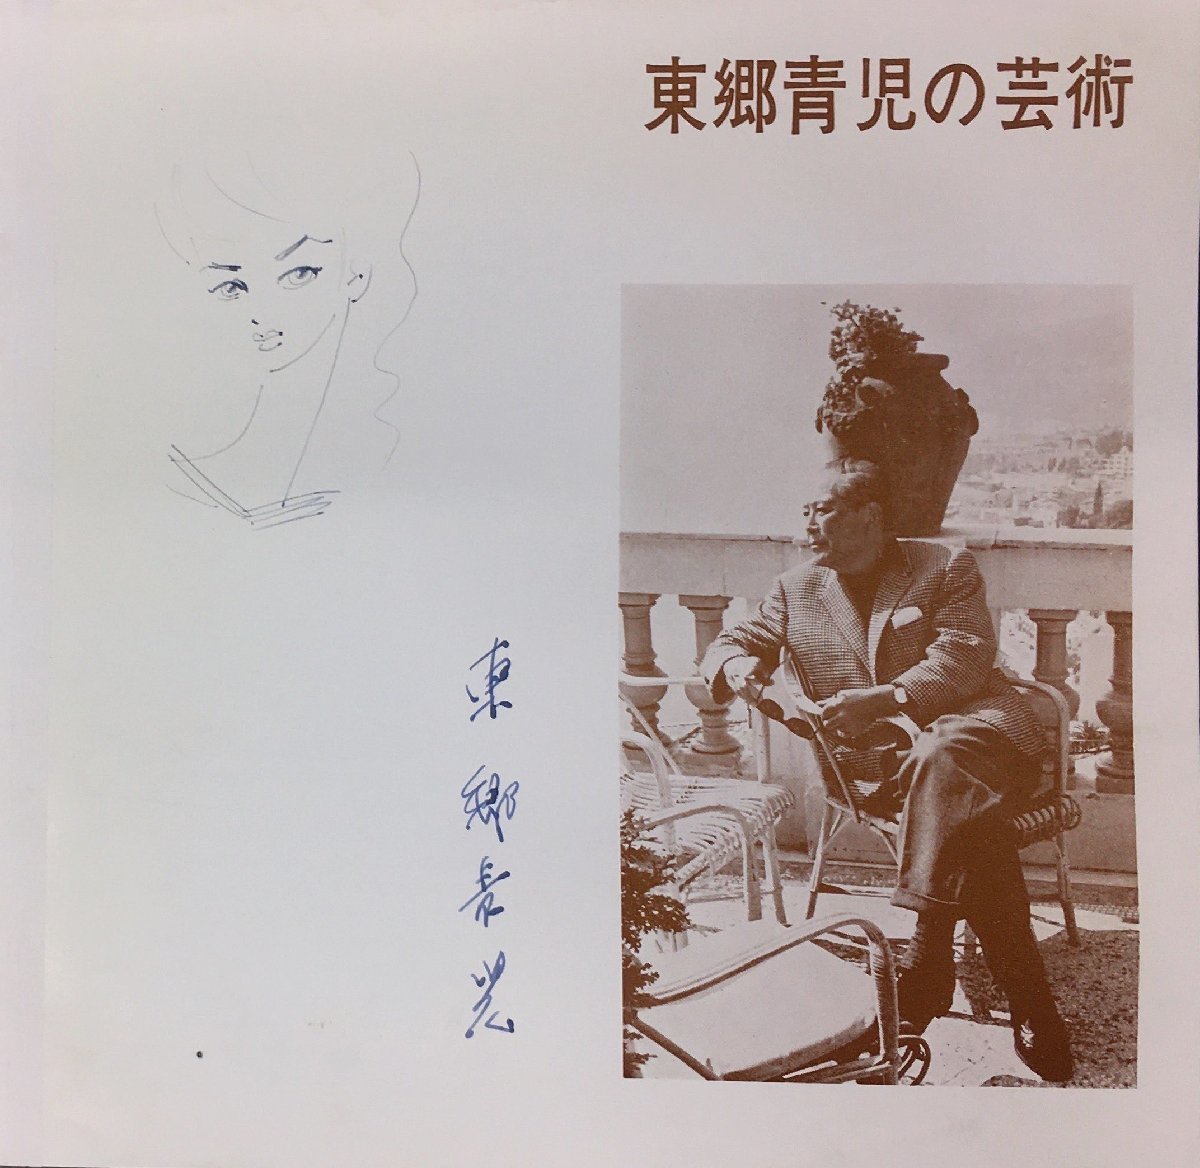 Гарантированная подлинность Сейдзи Того Нарисован вручную женщиной и подписан Художественный музей Сейдзи Того в Ниигате, 1962, произведение искусства, рисование, портрет